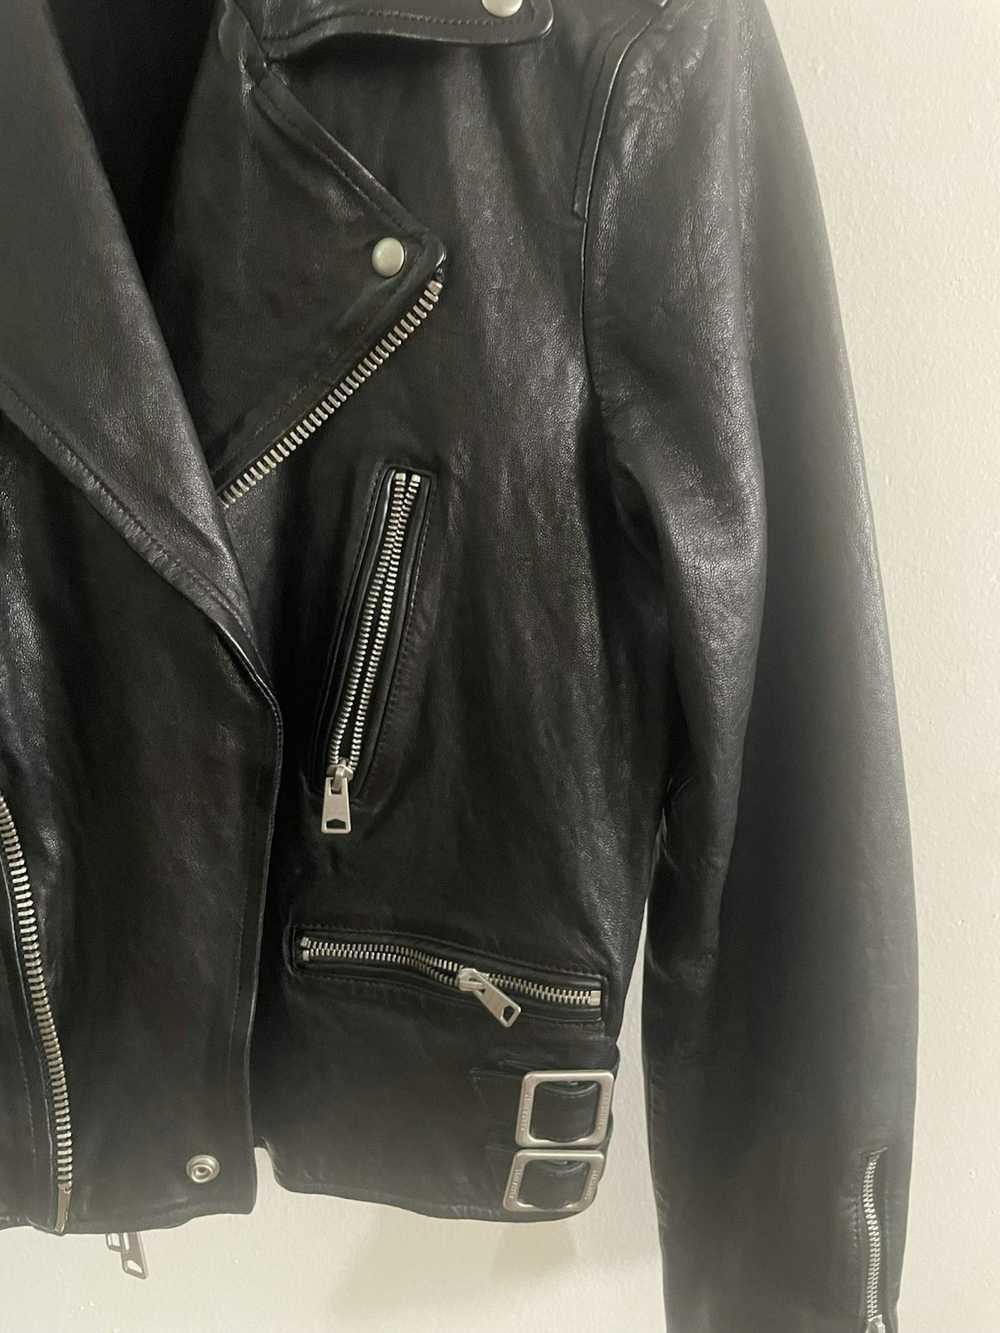 Allsaints Allsaints biker leather jacket - image 3